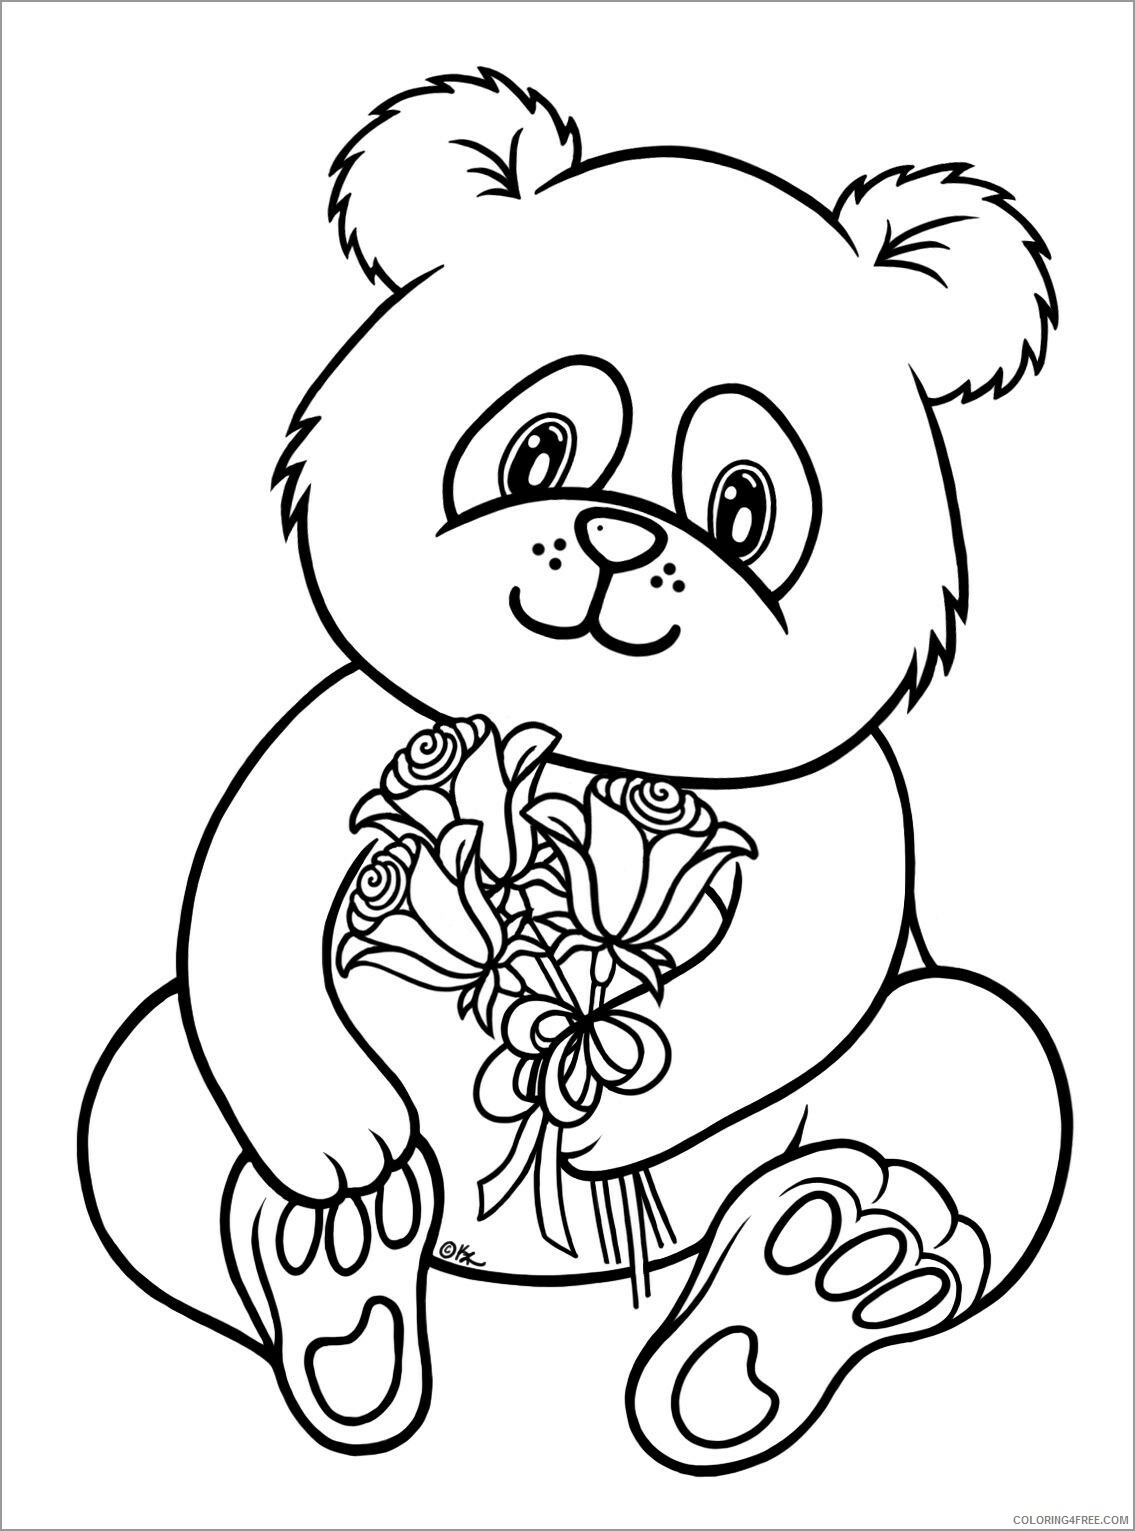 Panda Coloring Pages Animal Printable Sheets cute baby panda to print 2021 3674 Coloring4free